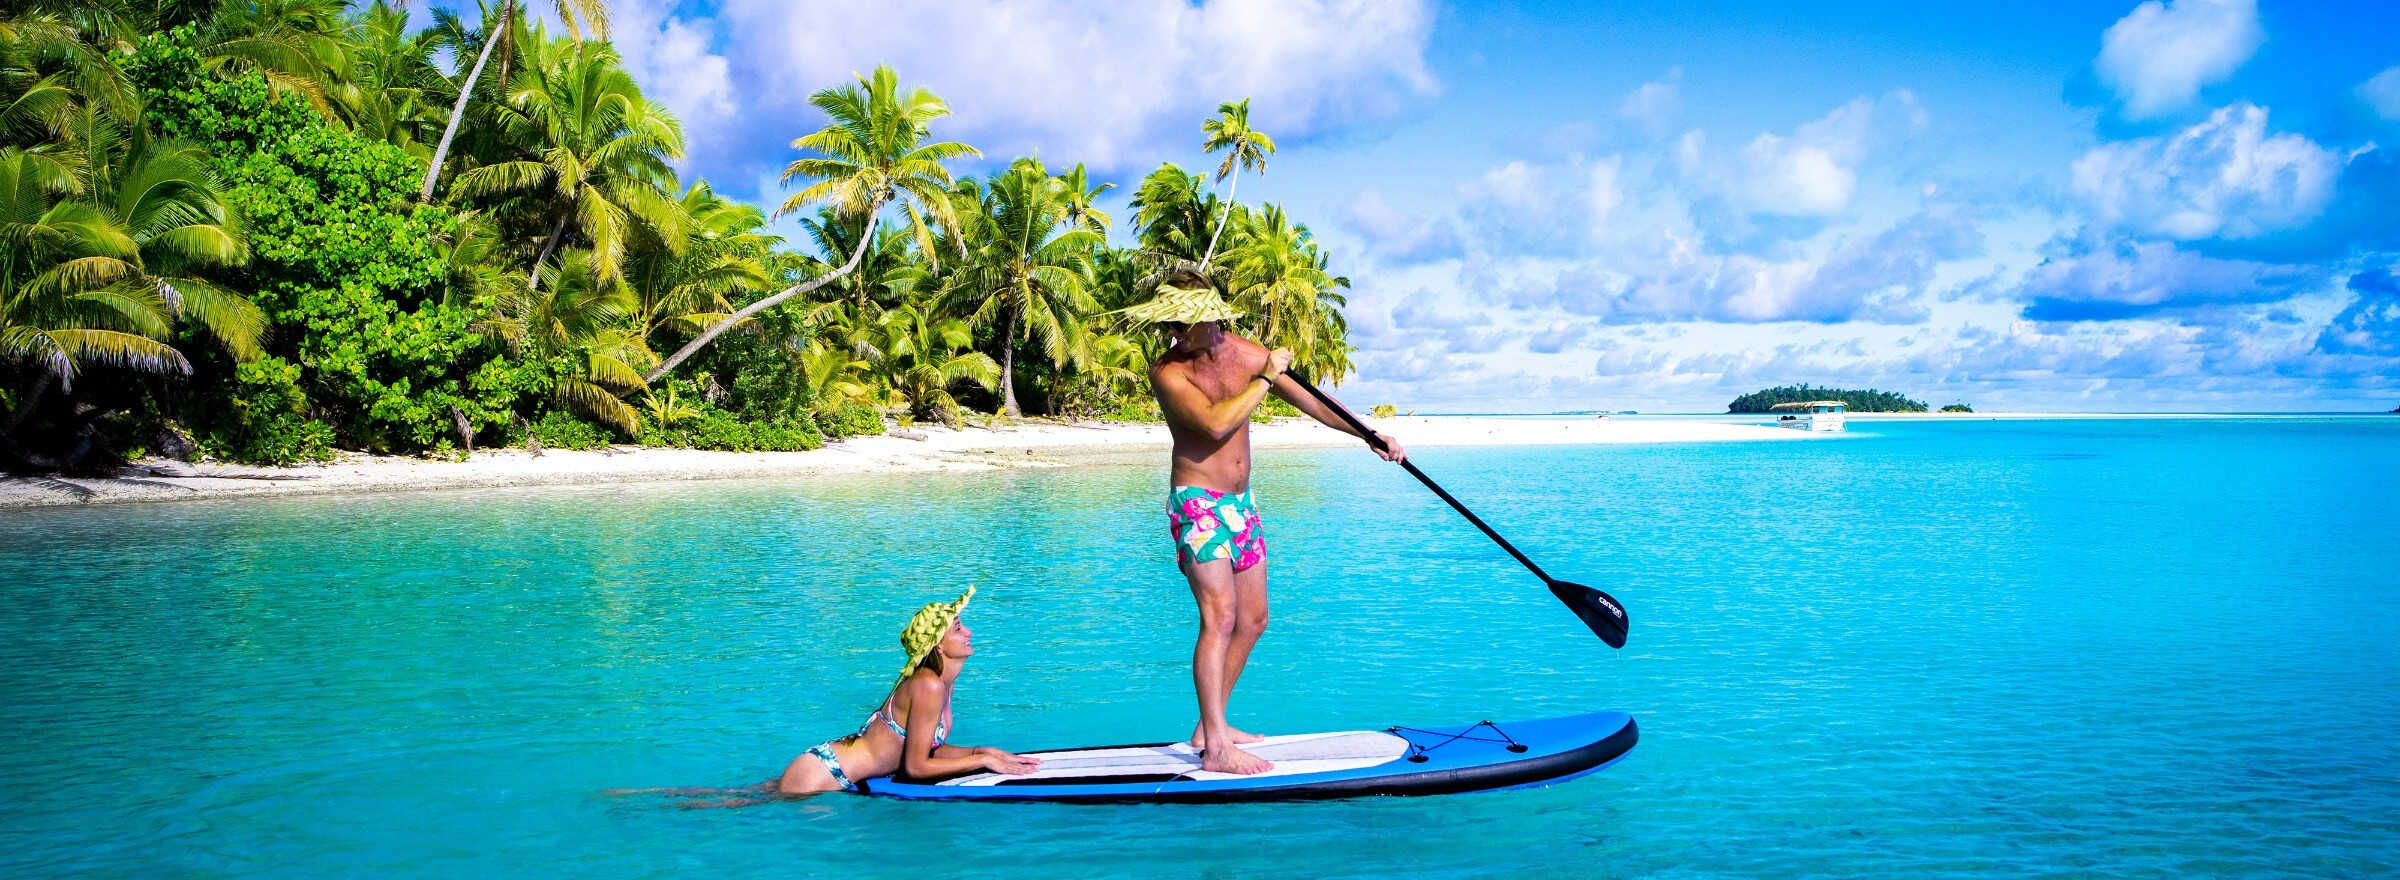 Cook Islands Travel